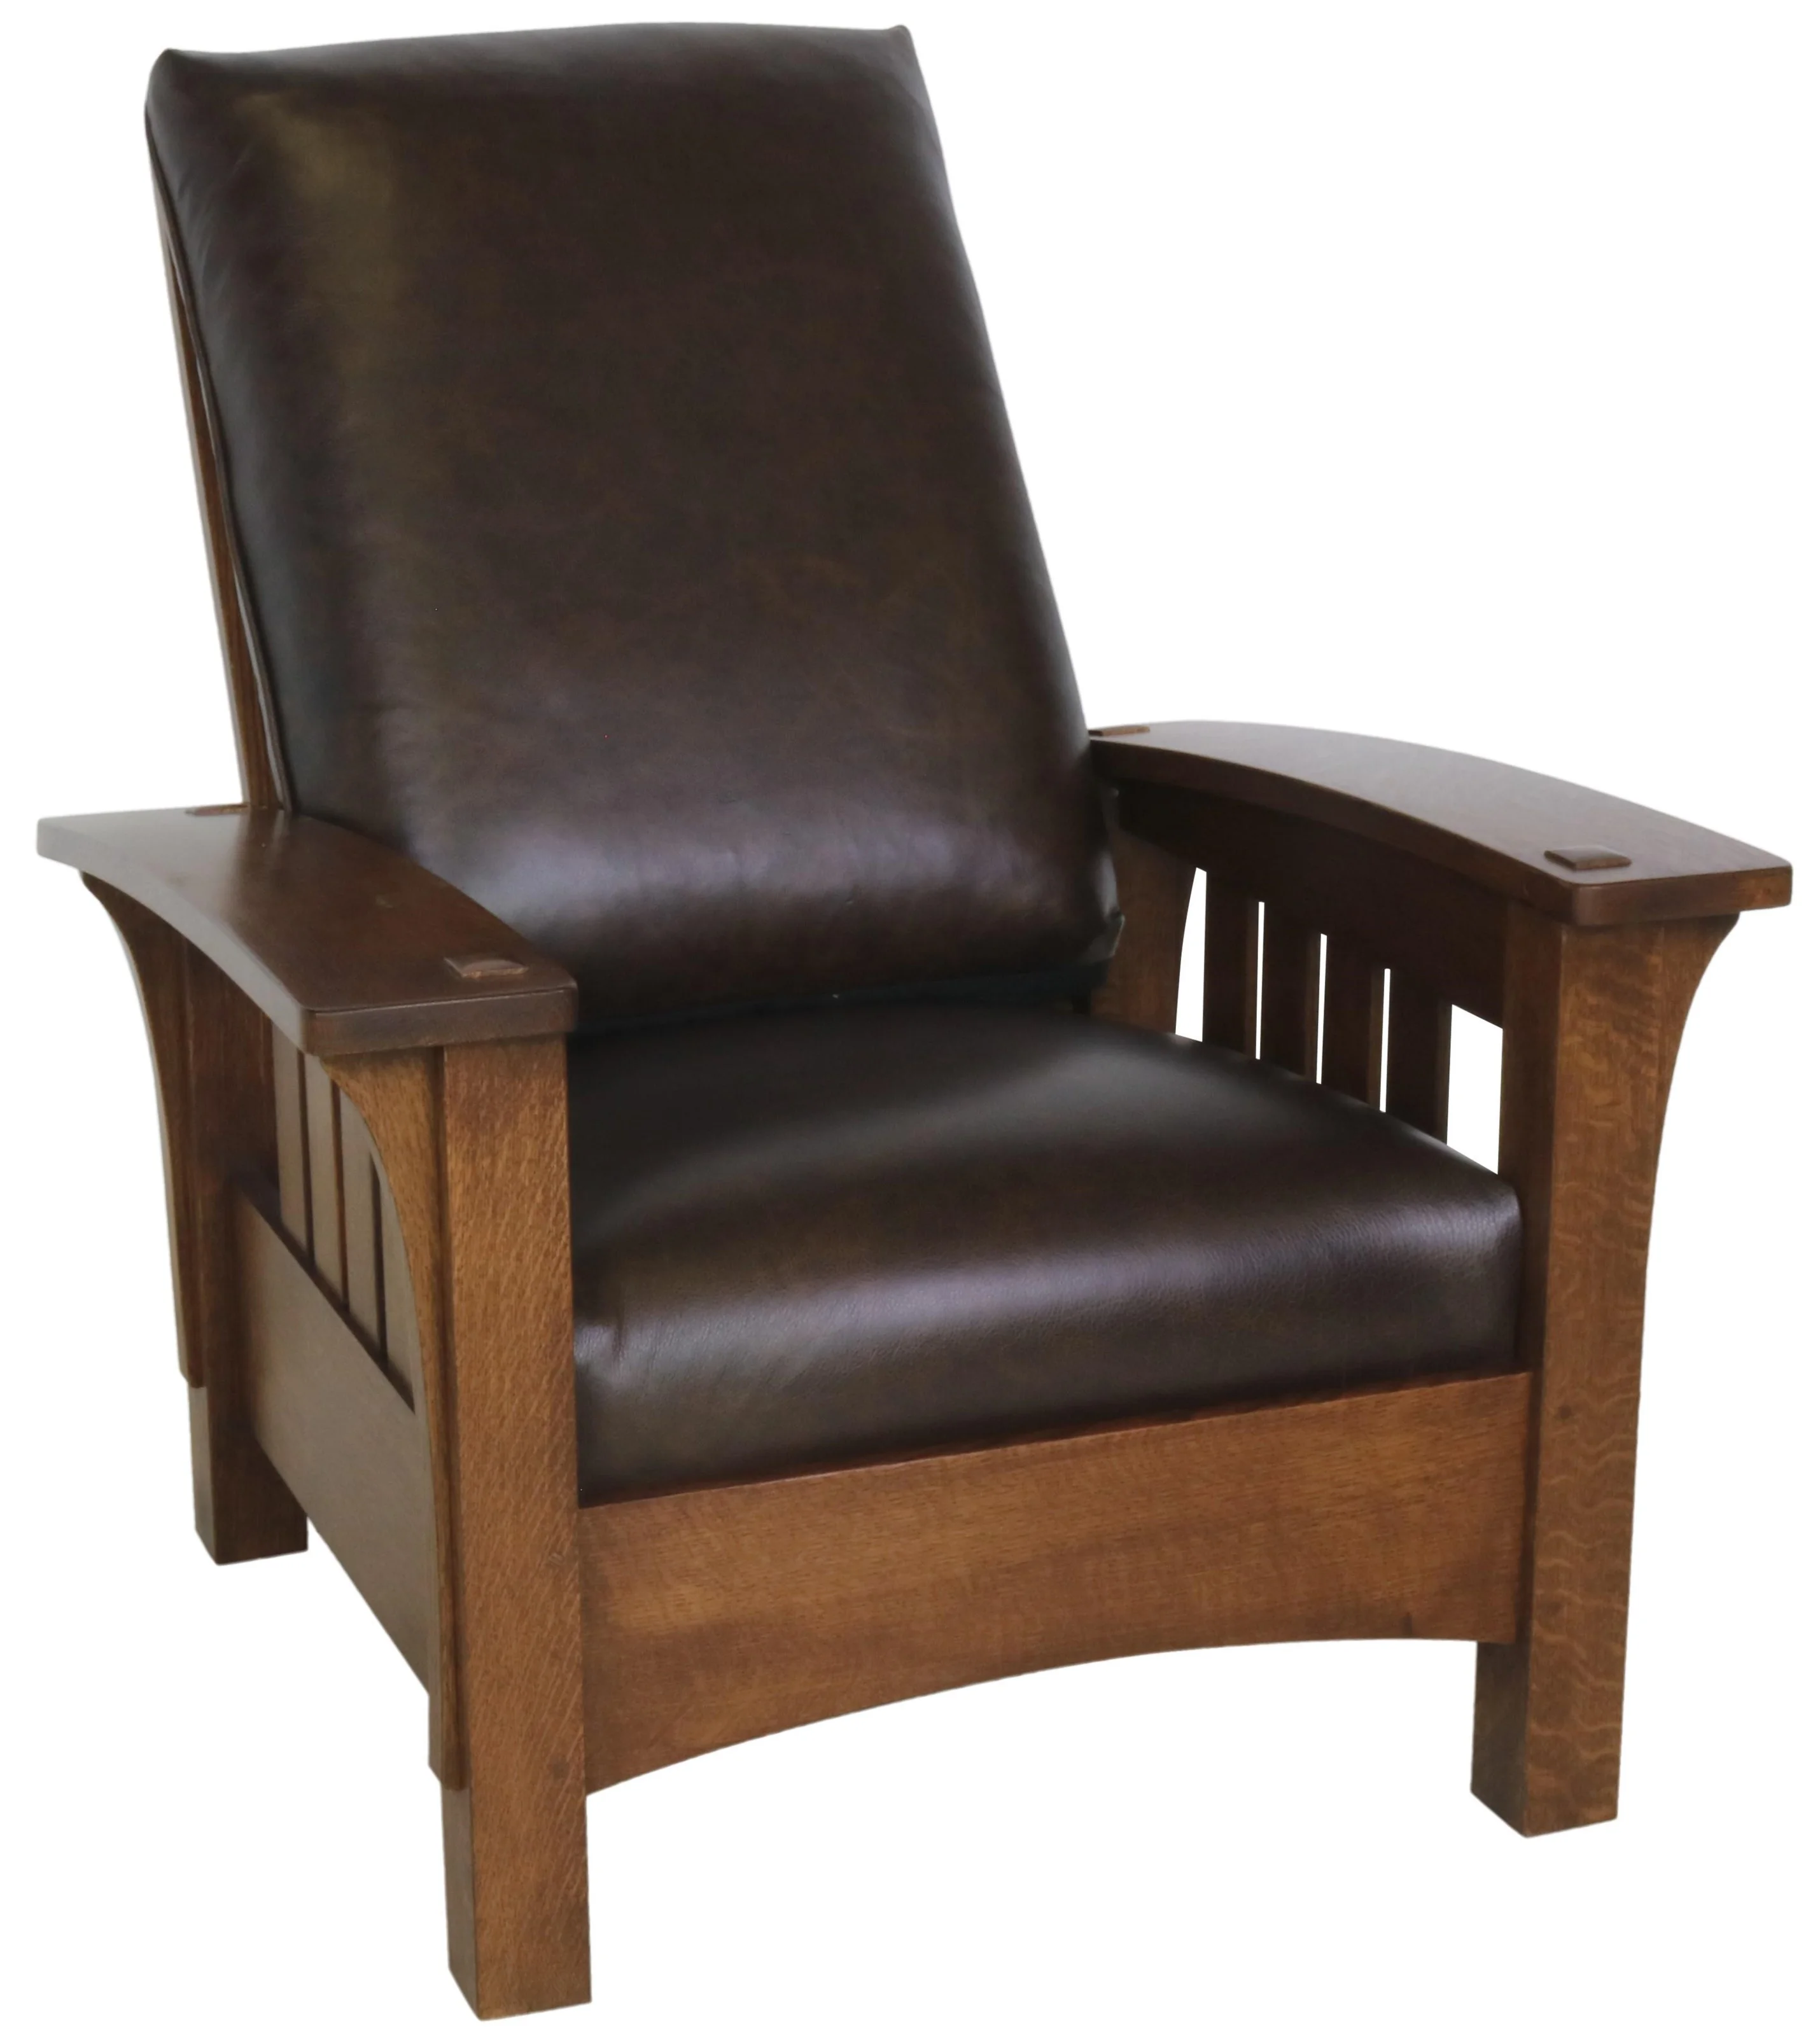 Custom Leather cushions, boxed cushion, Morris Chair cushions